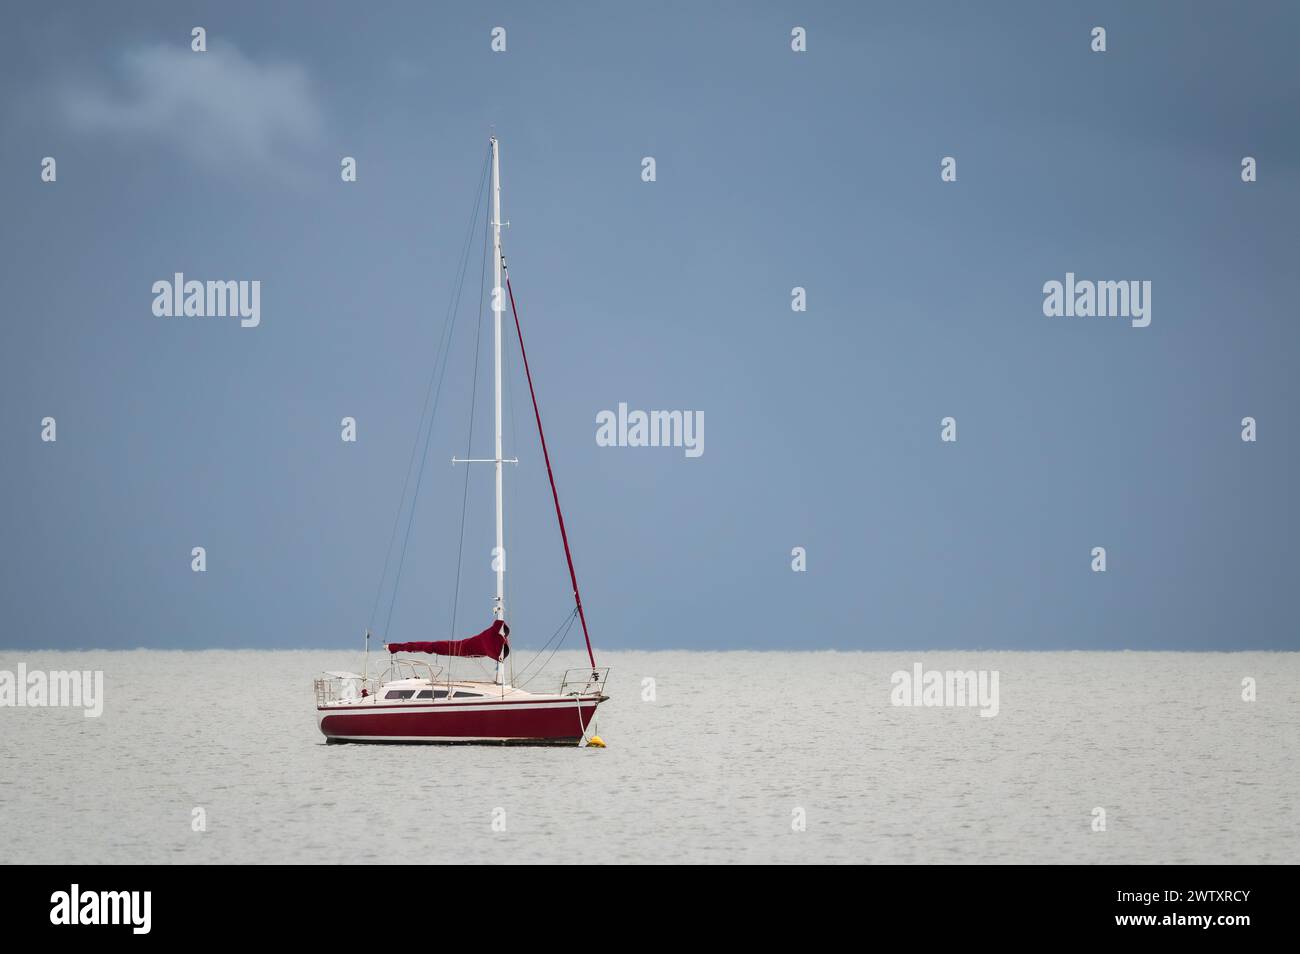 Eine einzelne, mit rotem Schalen vertäute Yacht liegt an einer ruhigen Moreton Bay mit grauem, offenem Himmel und einer einzigen weißlich-grauen Wolke. Stockfoto